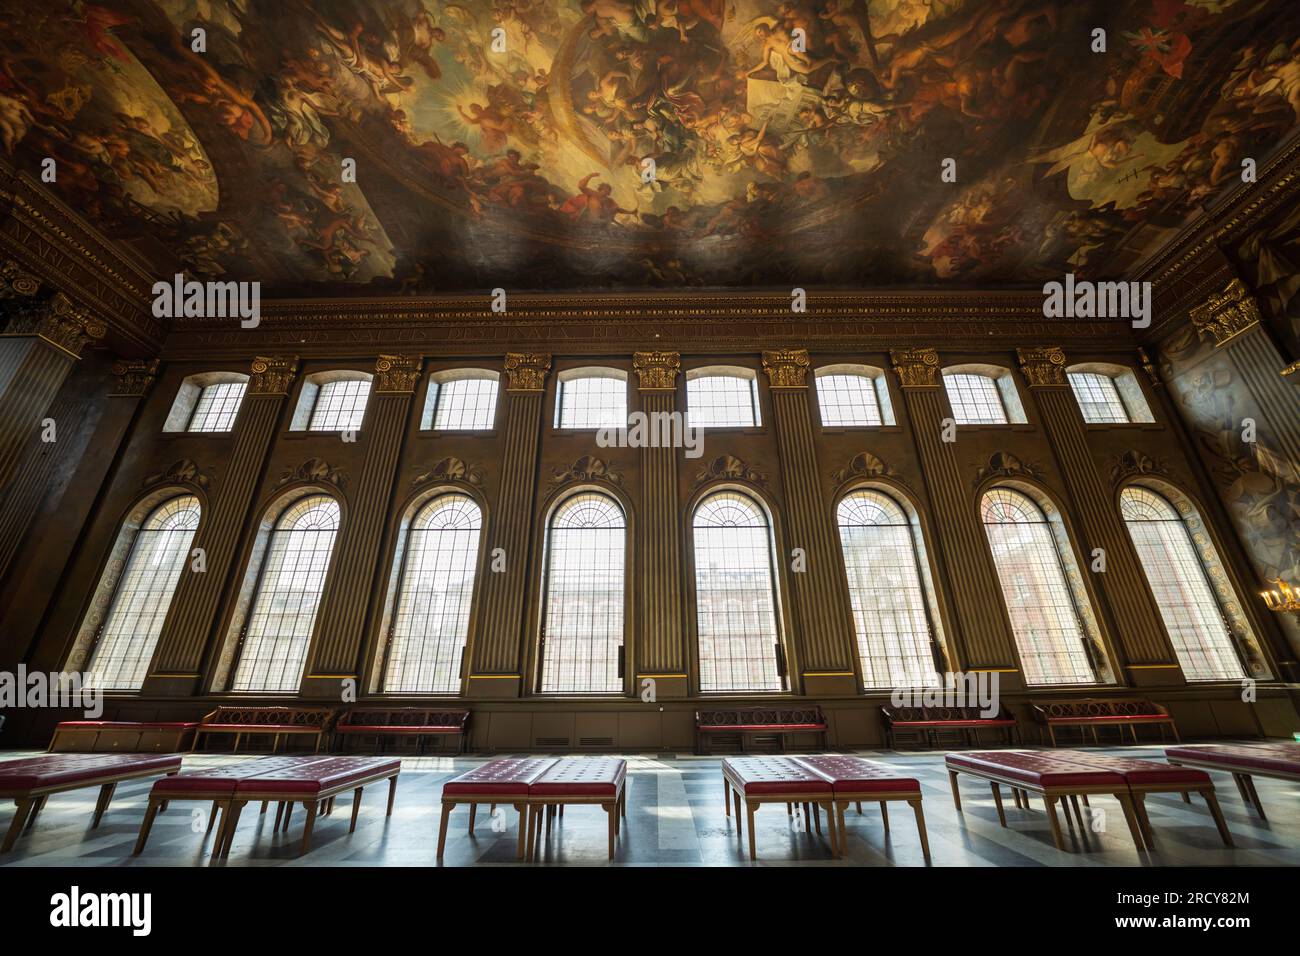 Old Royal Naval College, Greenwich, London, Painted Hall, große Halle mit Deckengemälden von 200 Figuren von Königen, Königinnen und mythischen Kreaturen. Stockfoto